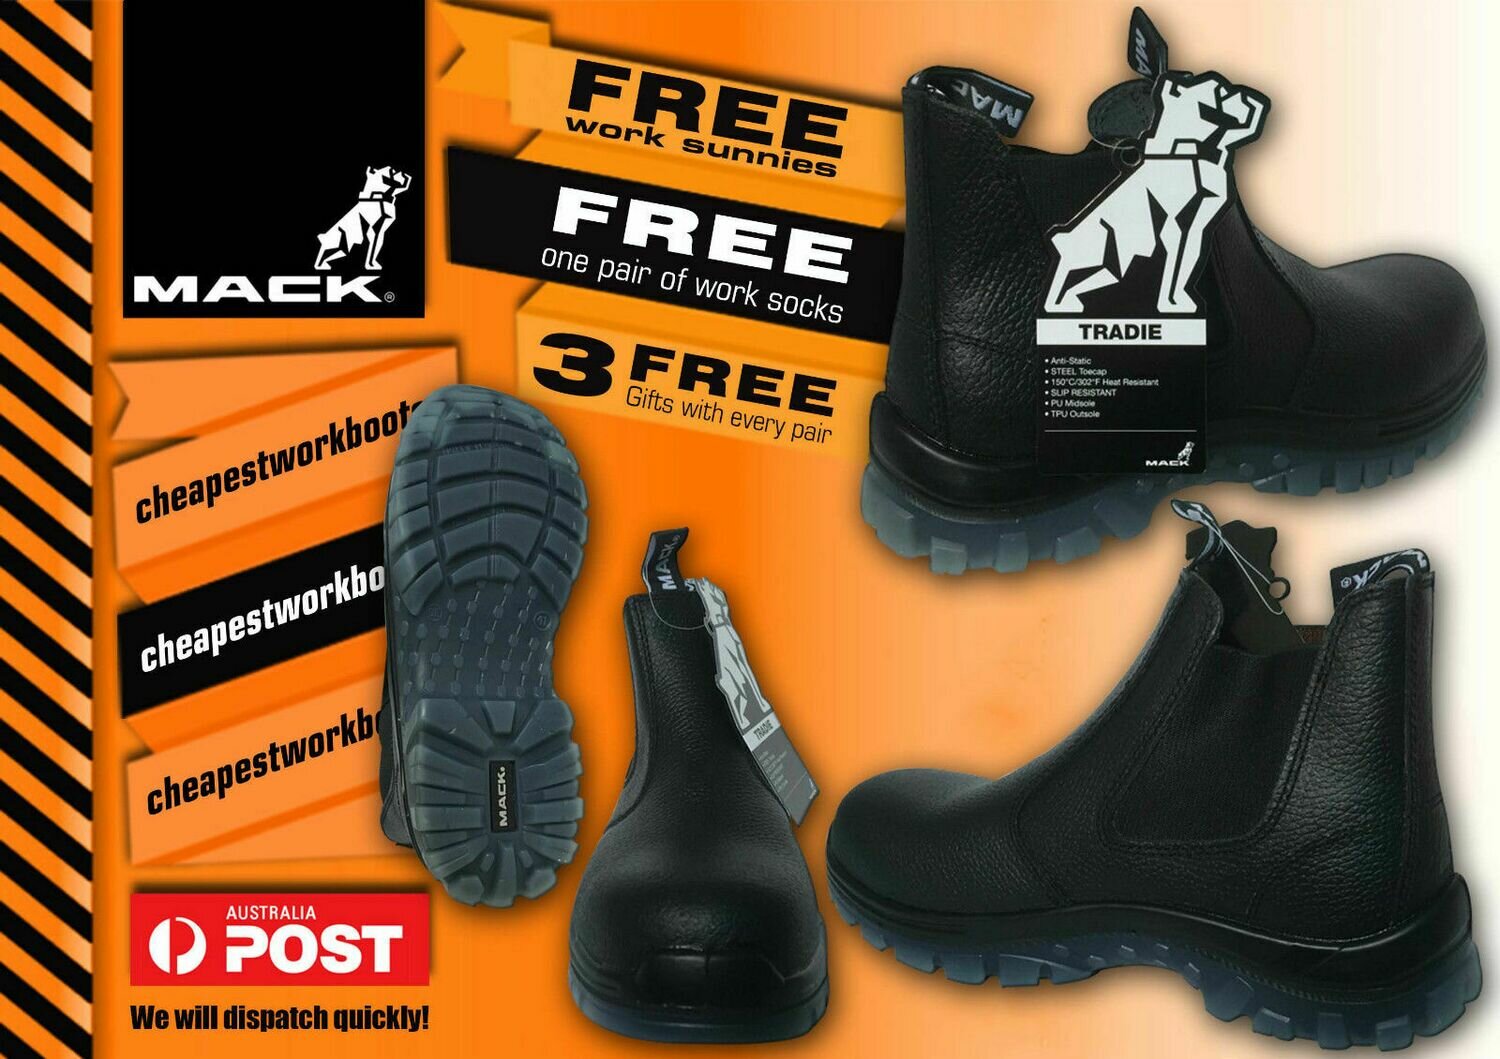 Mack Tradie MKTRADIE-BBF Steel Cap Safety Boot Slip On Elastic Sided FREE SOCKS, Size: 7